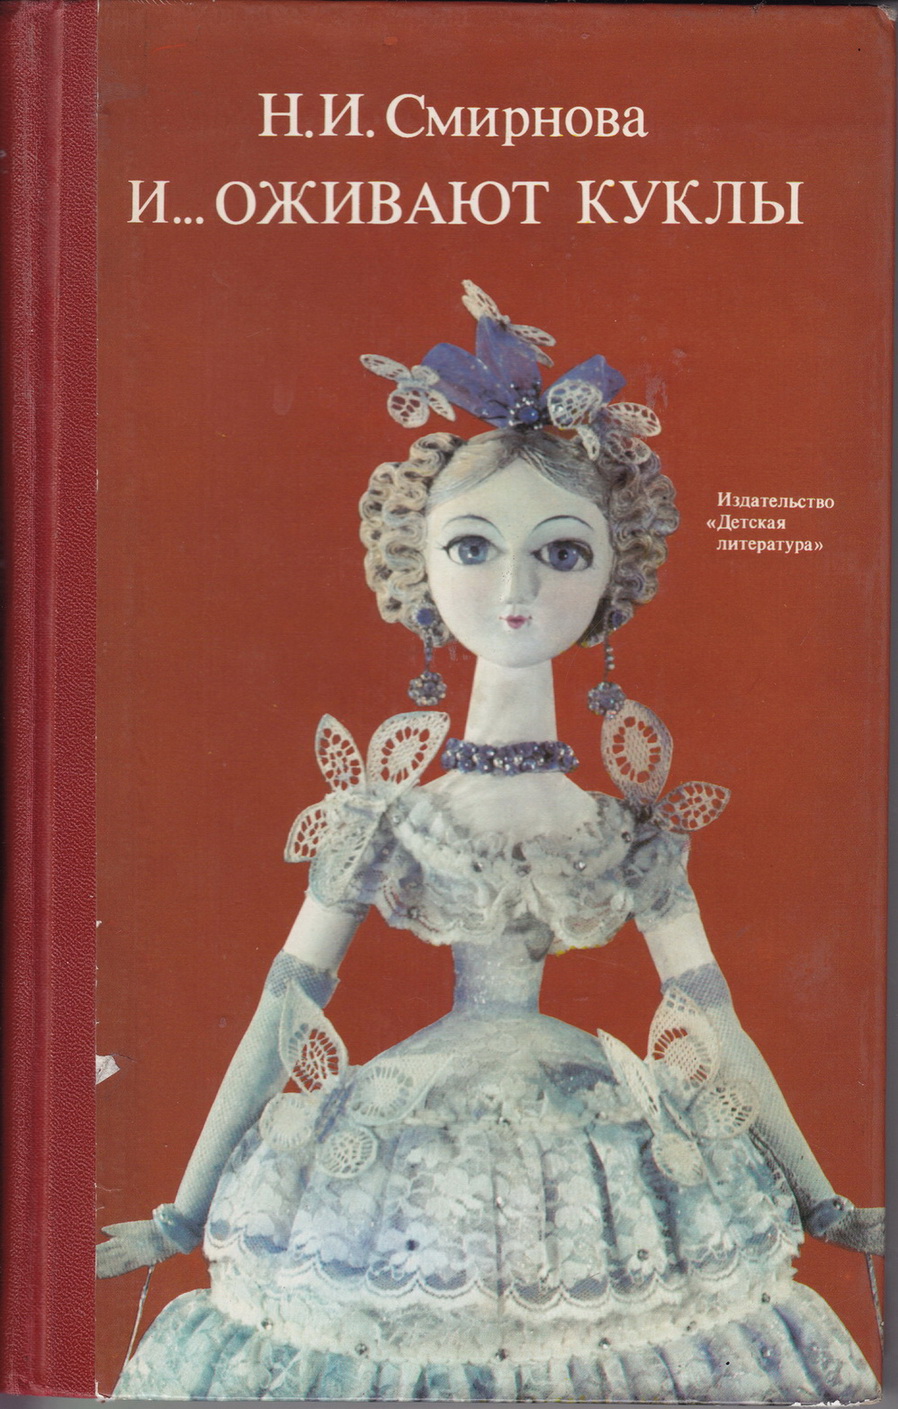 Нажмите для увеличения. Смирнова, Н. И. И... оживают куклы : книга о кукольных театрах 